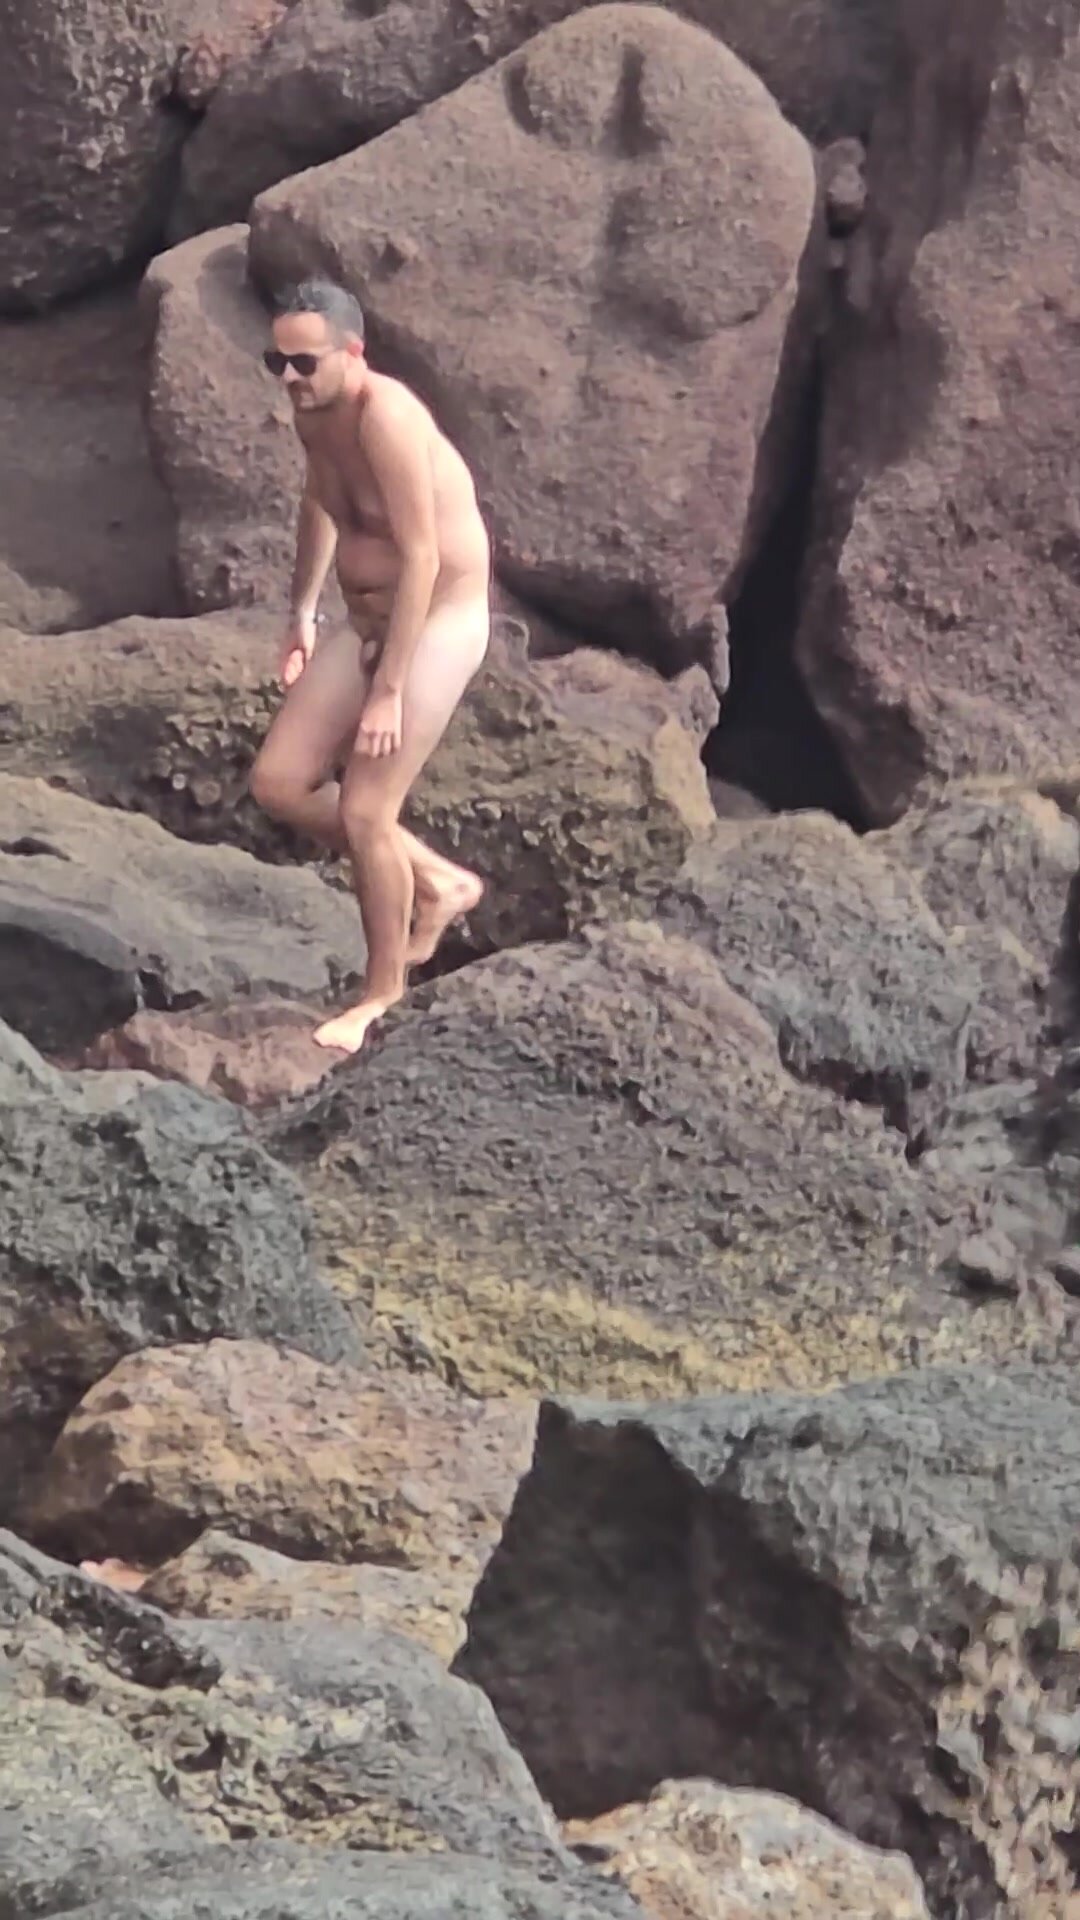 nude beach video 56 thisvid com на русском